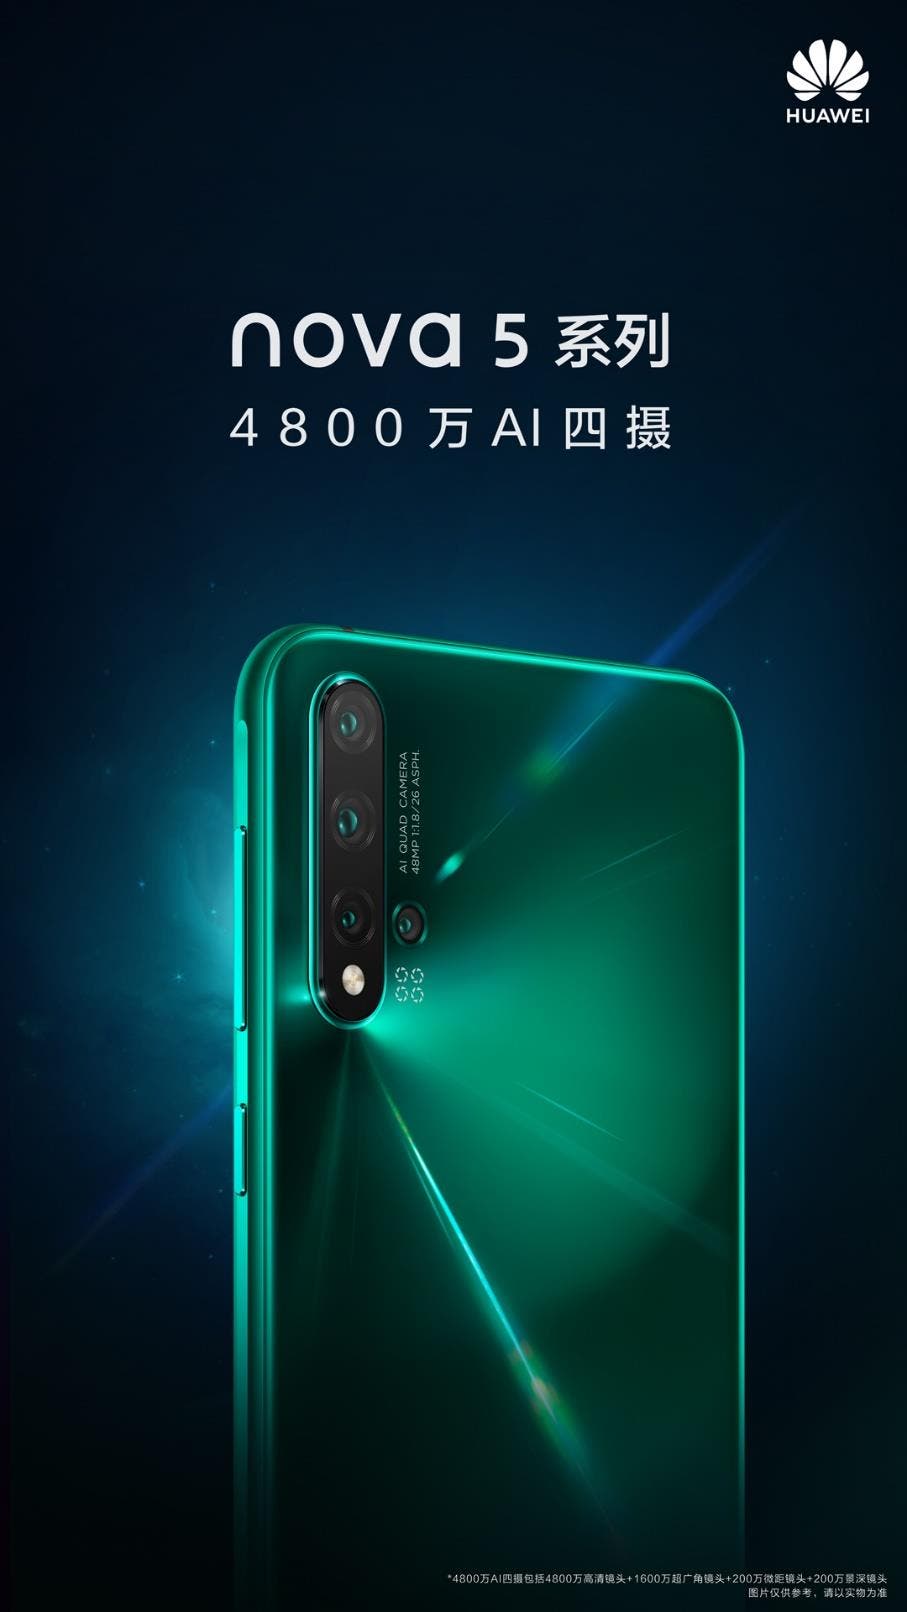 Huawei nova 5 series